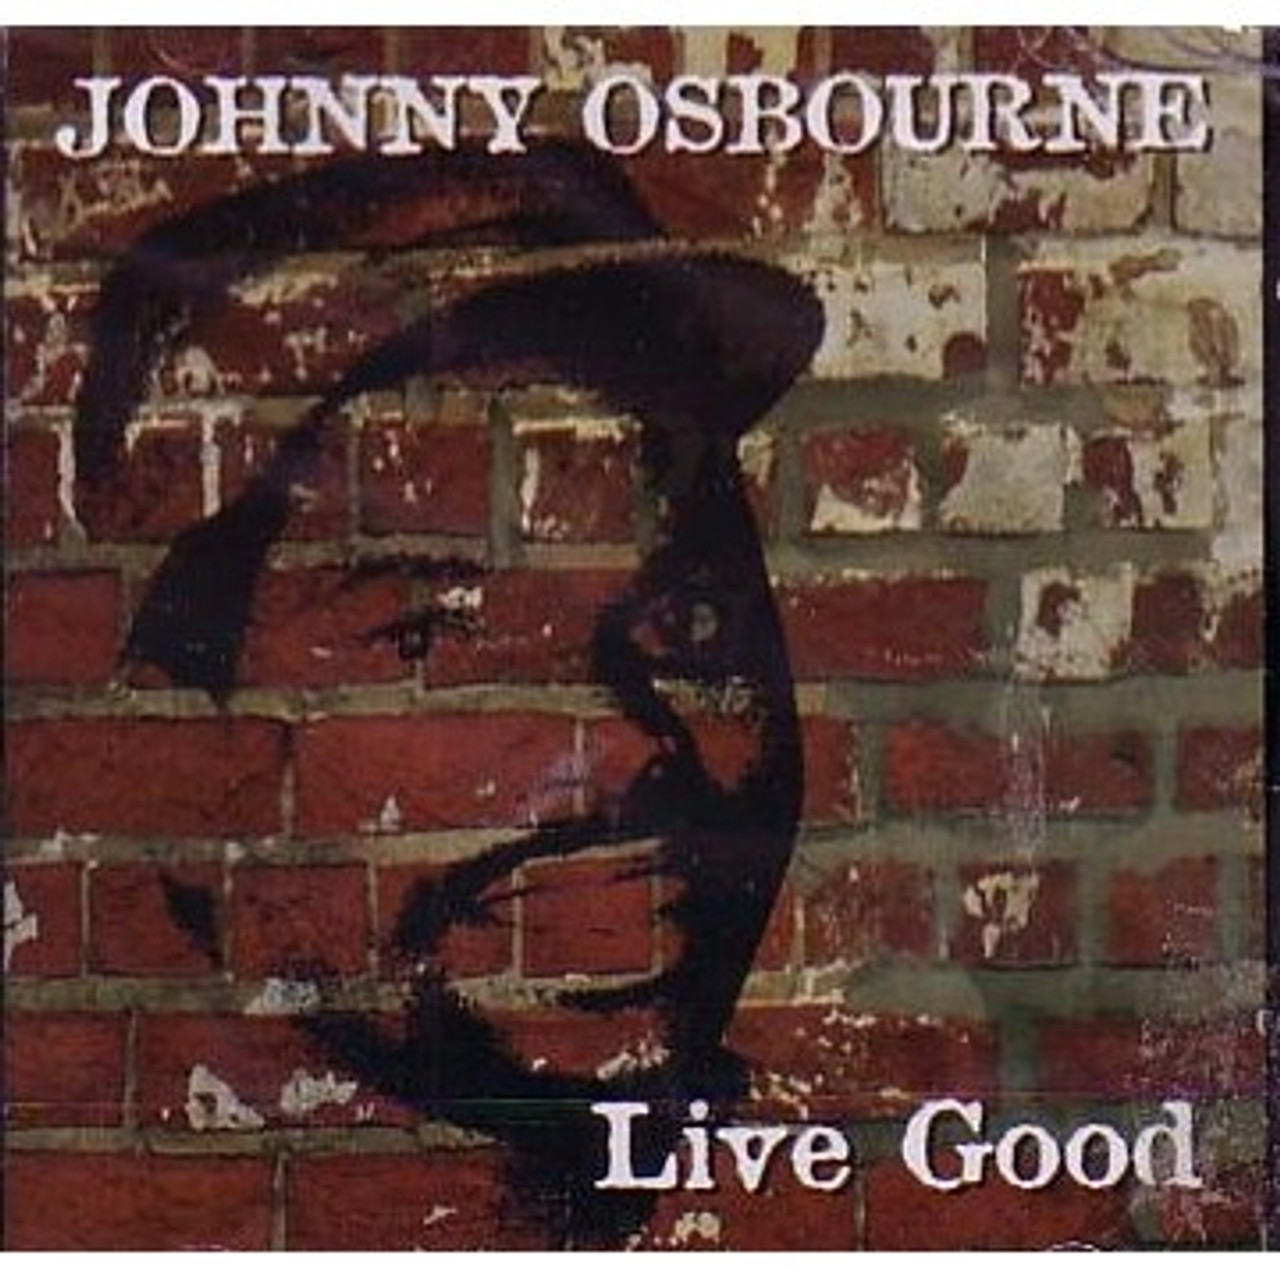 LIVE GOOD JOHNNY OSBOURNE